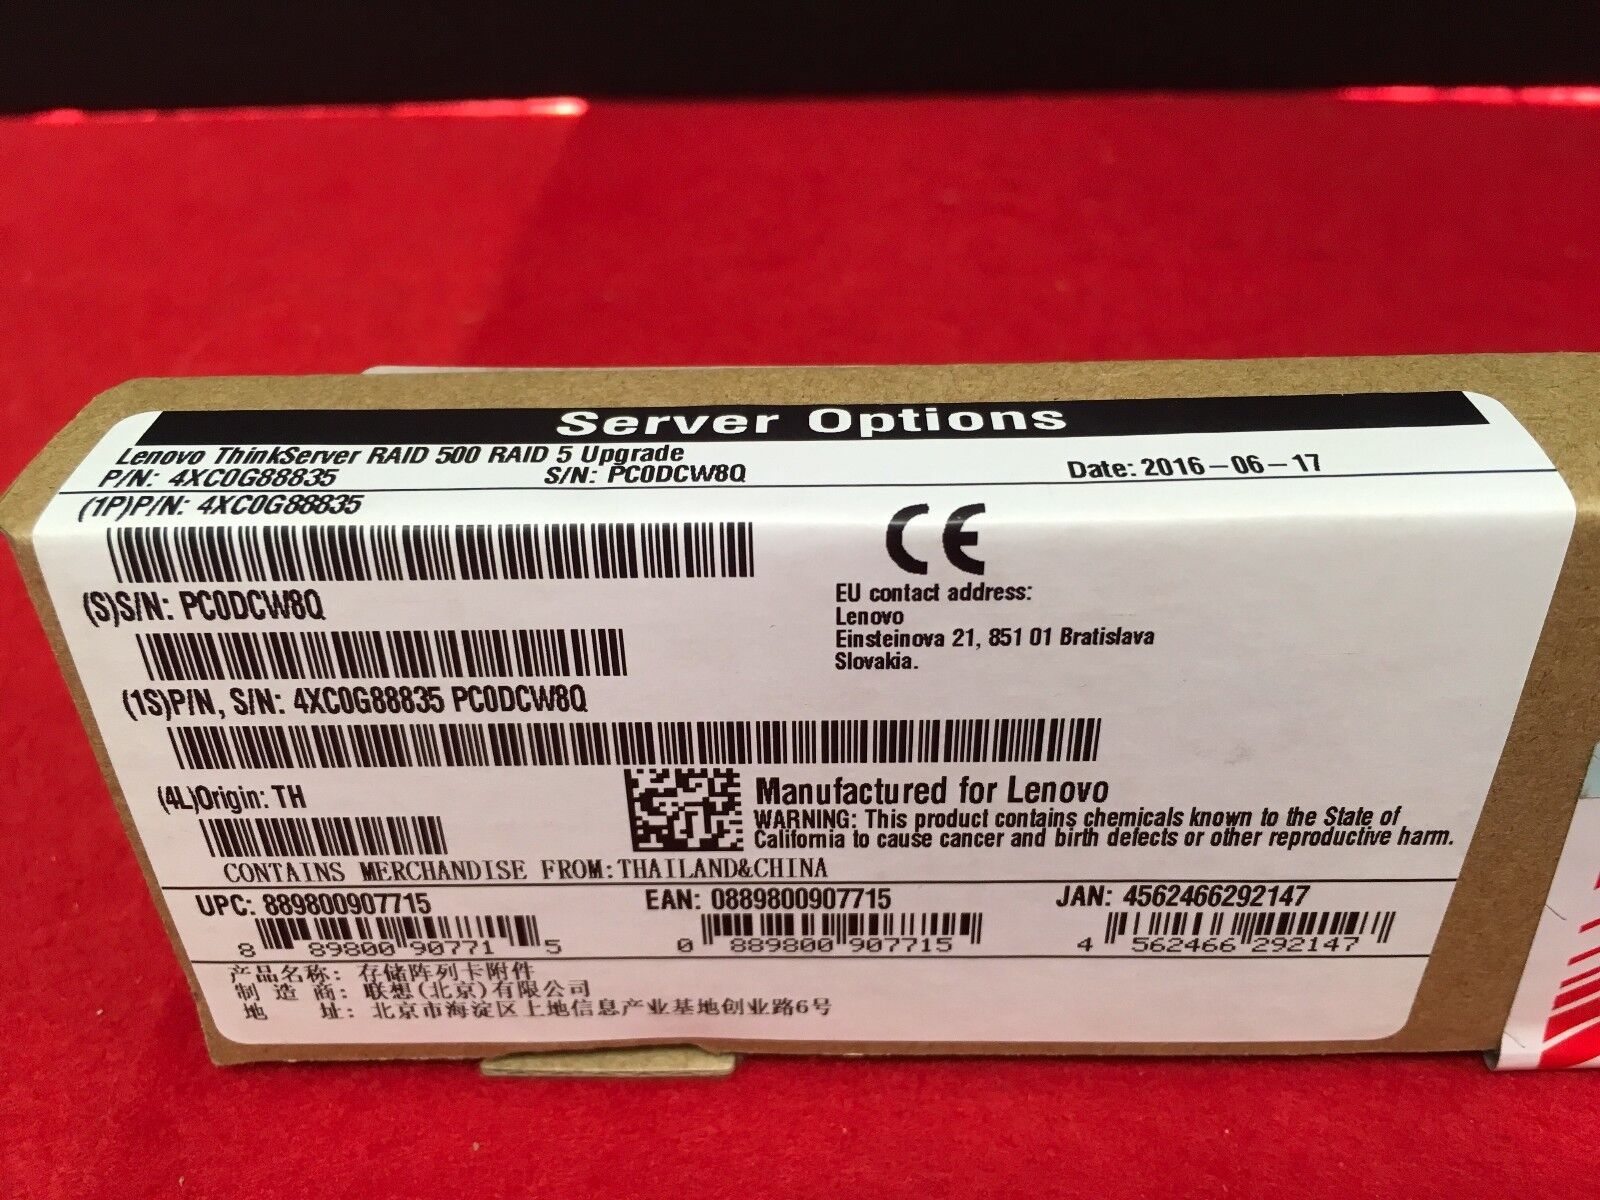 Lenovo ThinkServer RAID 500 RAID 5 Upgrade 4XC0G88835 ✅❤️️✅❤️️ NEW